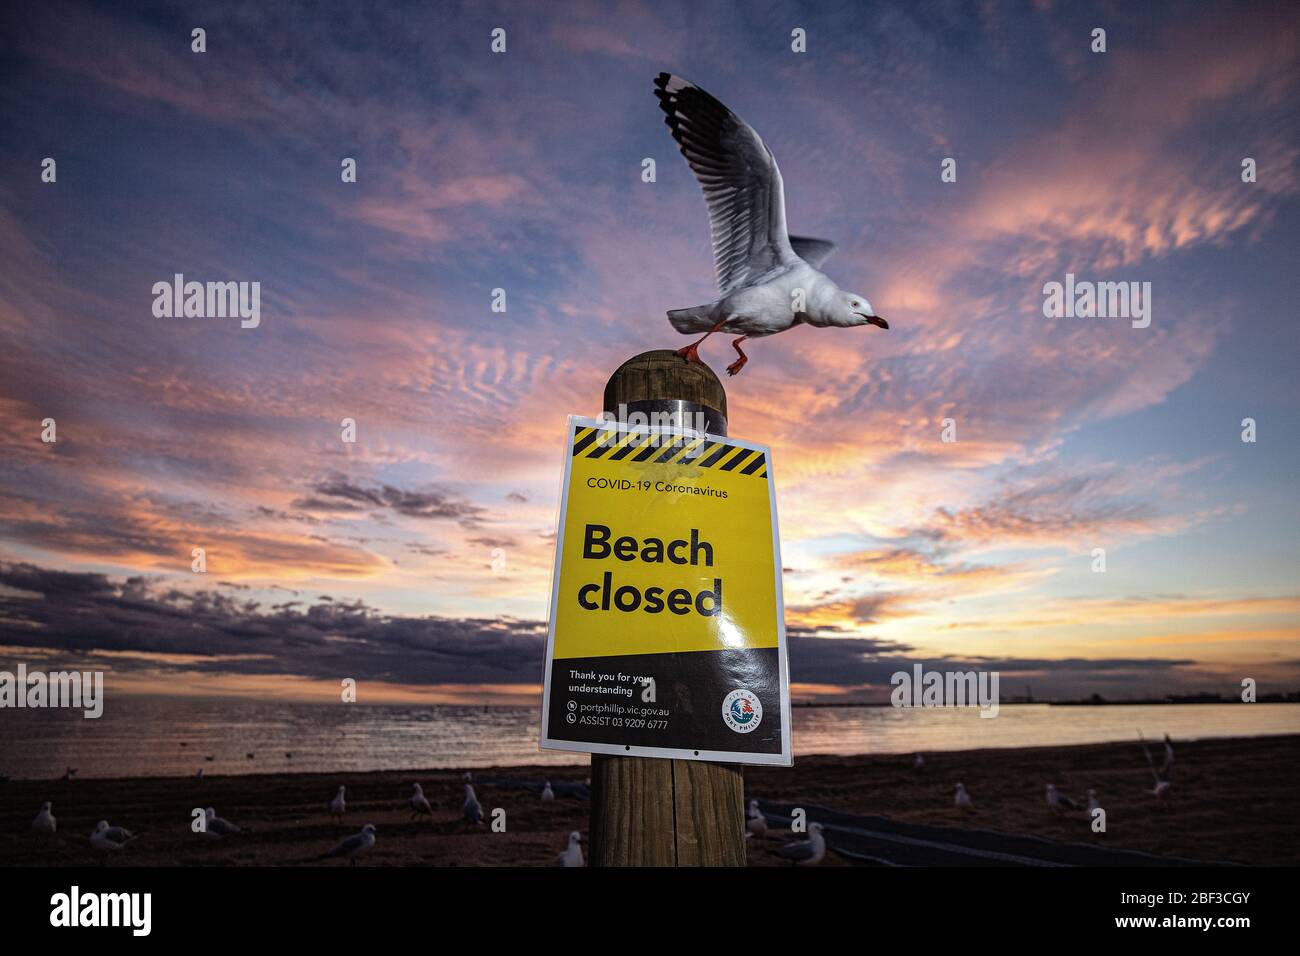 Covid-19, coronavirus, crise pandémique à Melbourne Australie 2020. Un panneau « Plage fermée » à St Kilda Beach Melbourne, fermé en raison de la pandémie. Banque D'Images